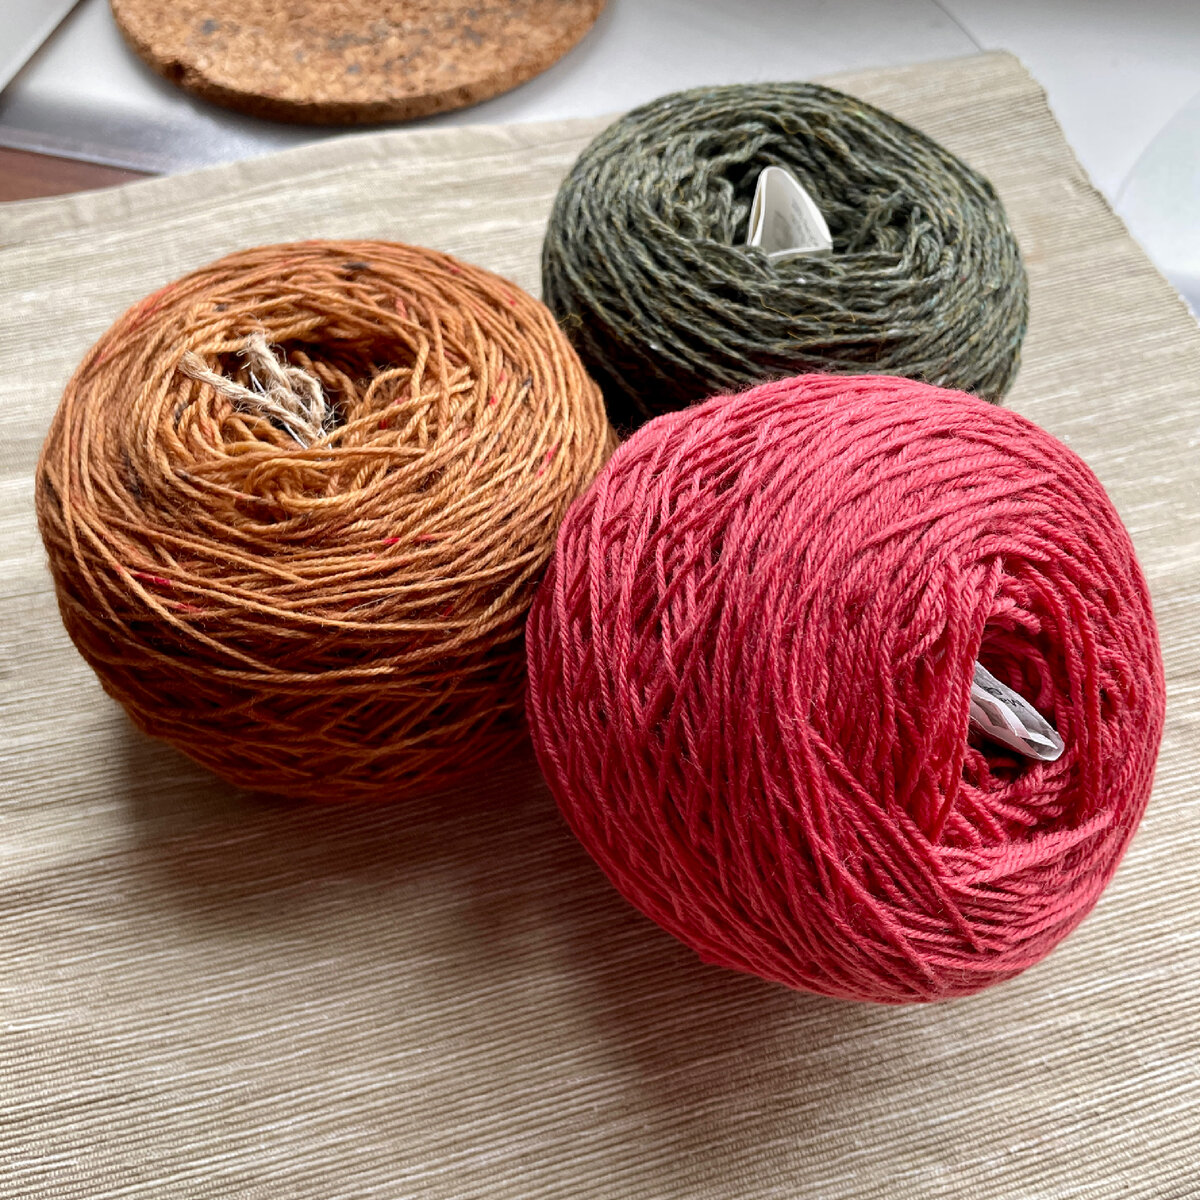 Как выбрать пряжу для вязания начинающим мастерицам?